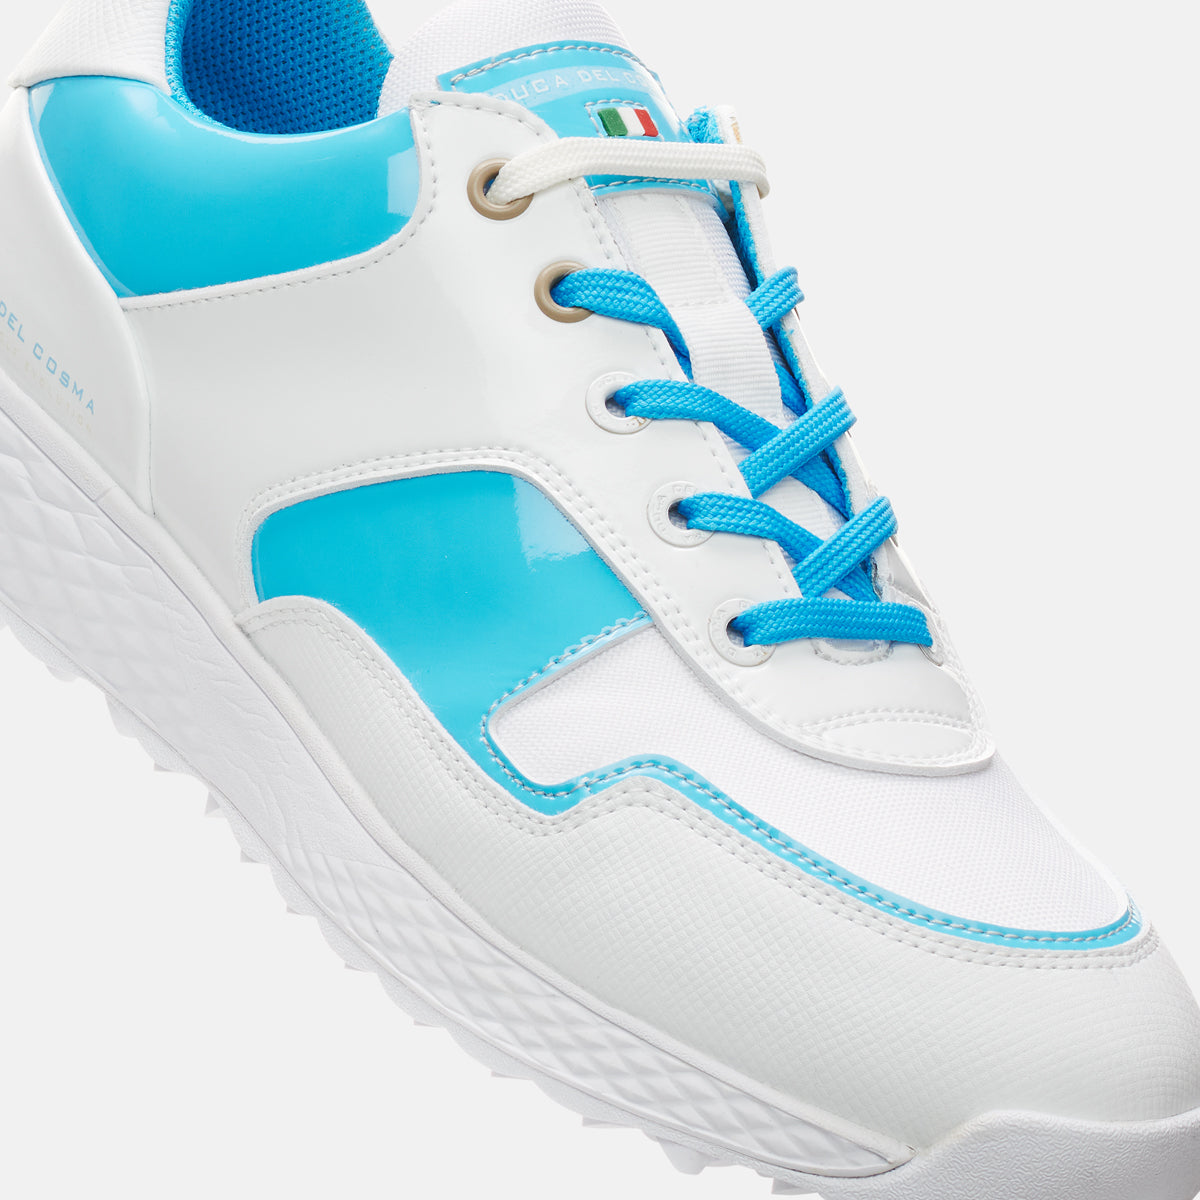 waterproof golf shoes women